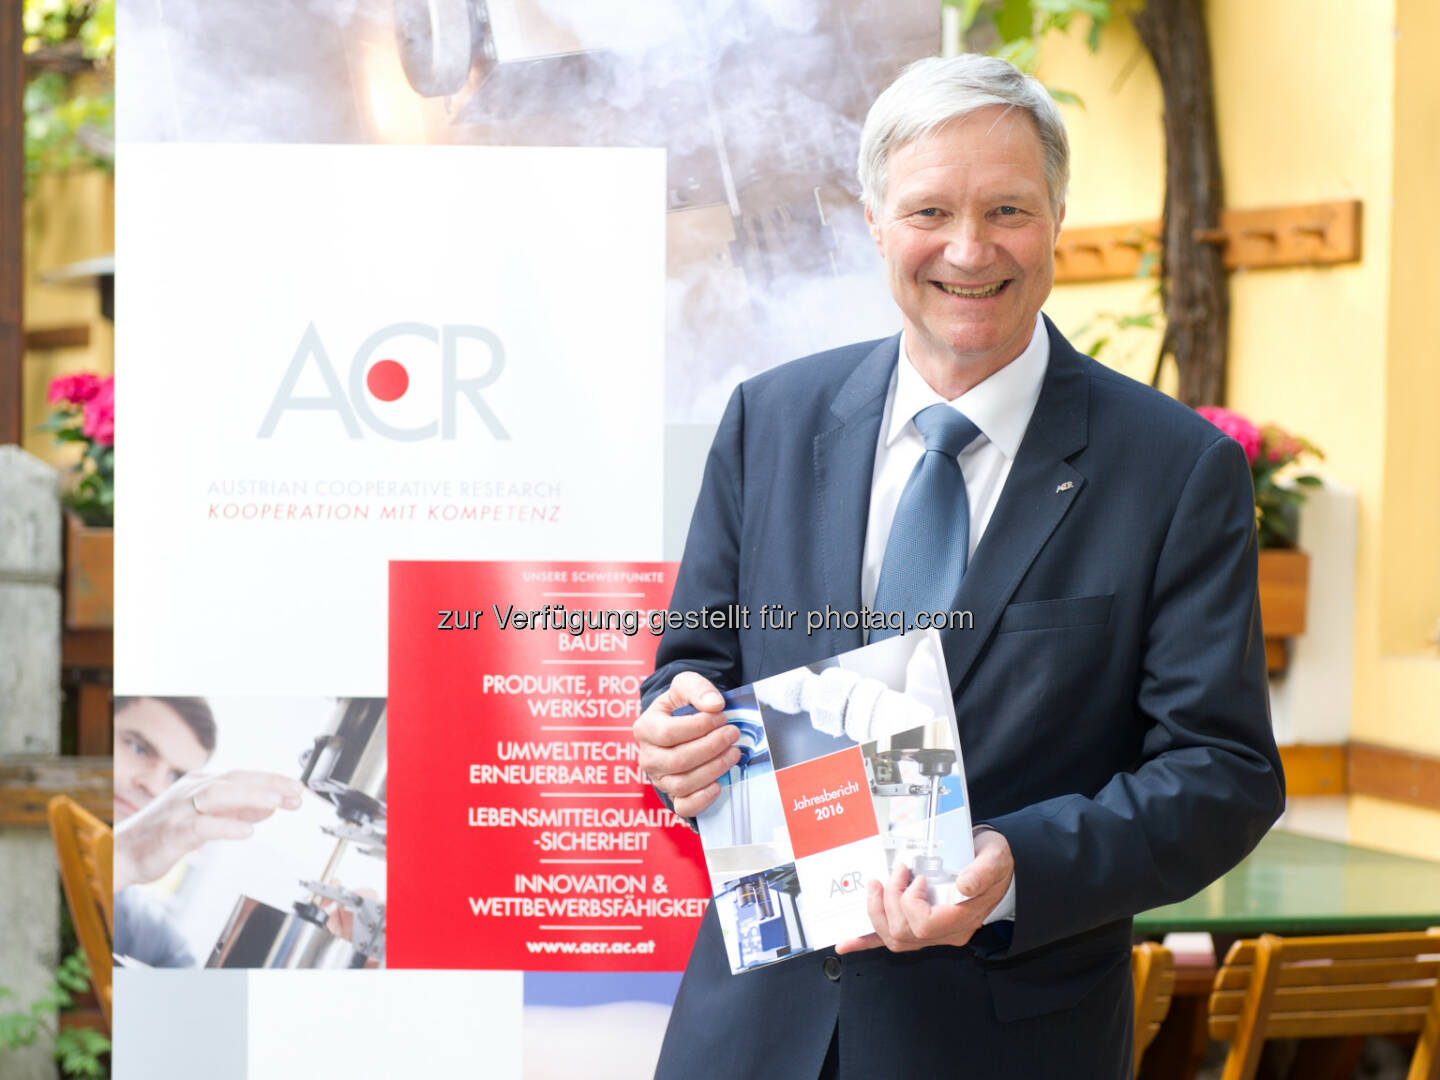 Martin Leitl, Päsident der ACR, präsentiert den Jahresbericht 2016 - ACR Austrian Cooperative Research: ACR präsentiert Bilanz für 2016 (Fotograf: ALICE SCHNUER-WALA / Fotocredit: ACR)